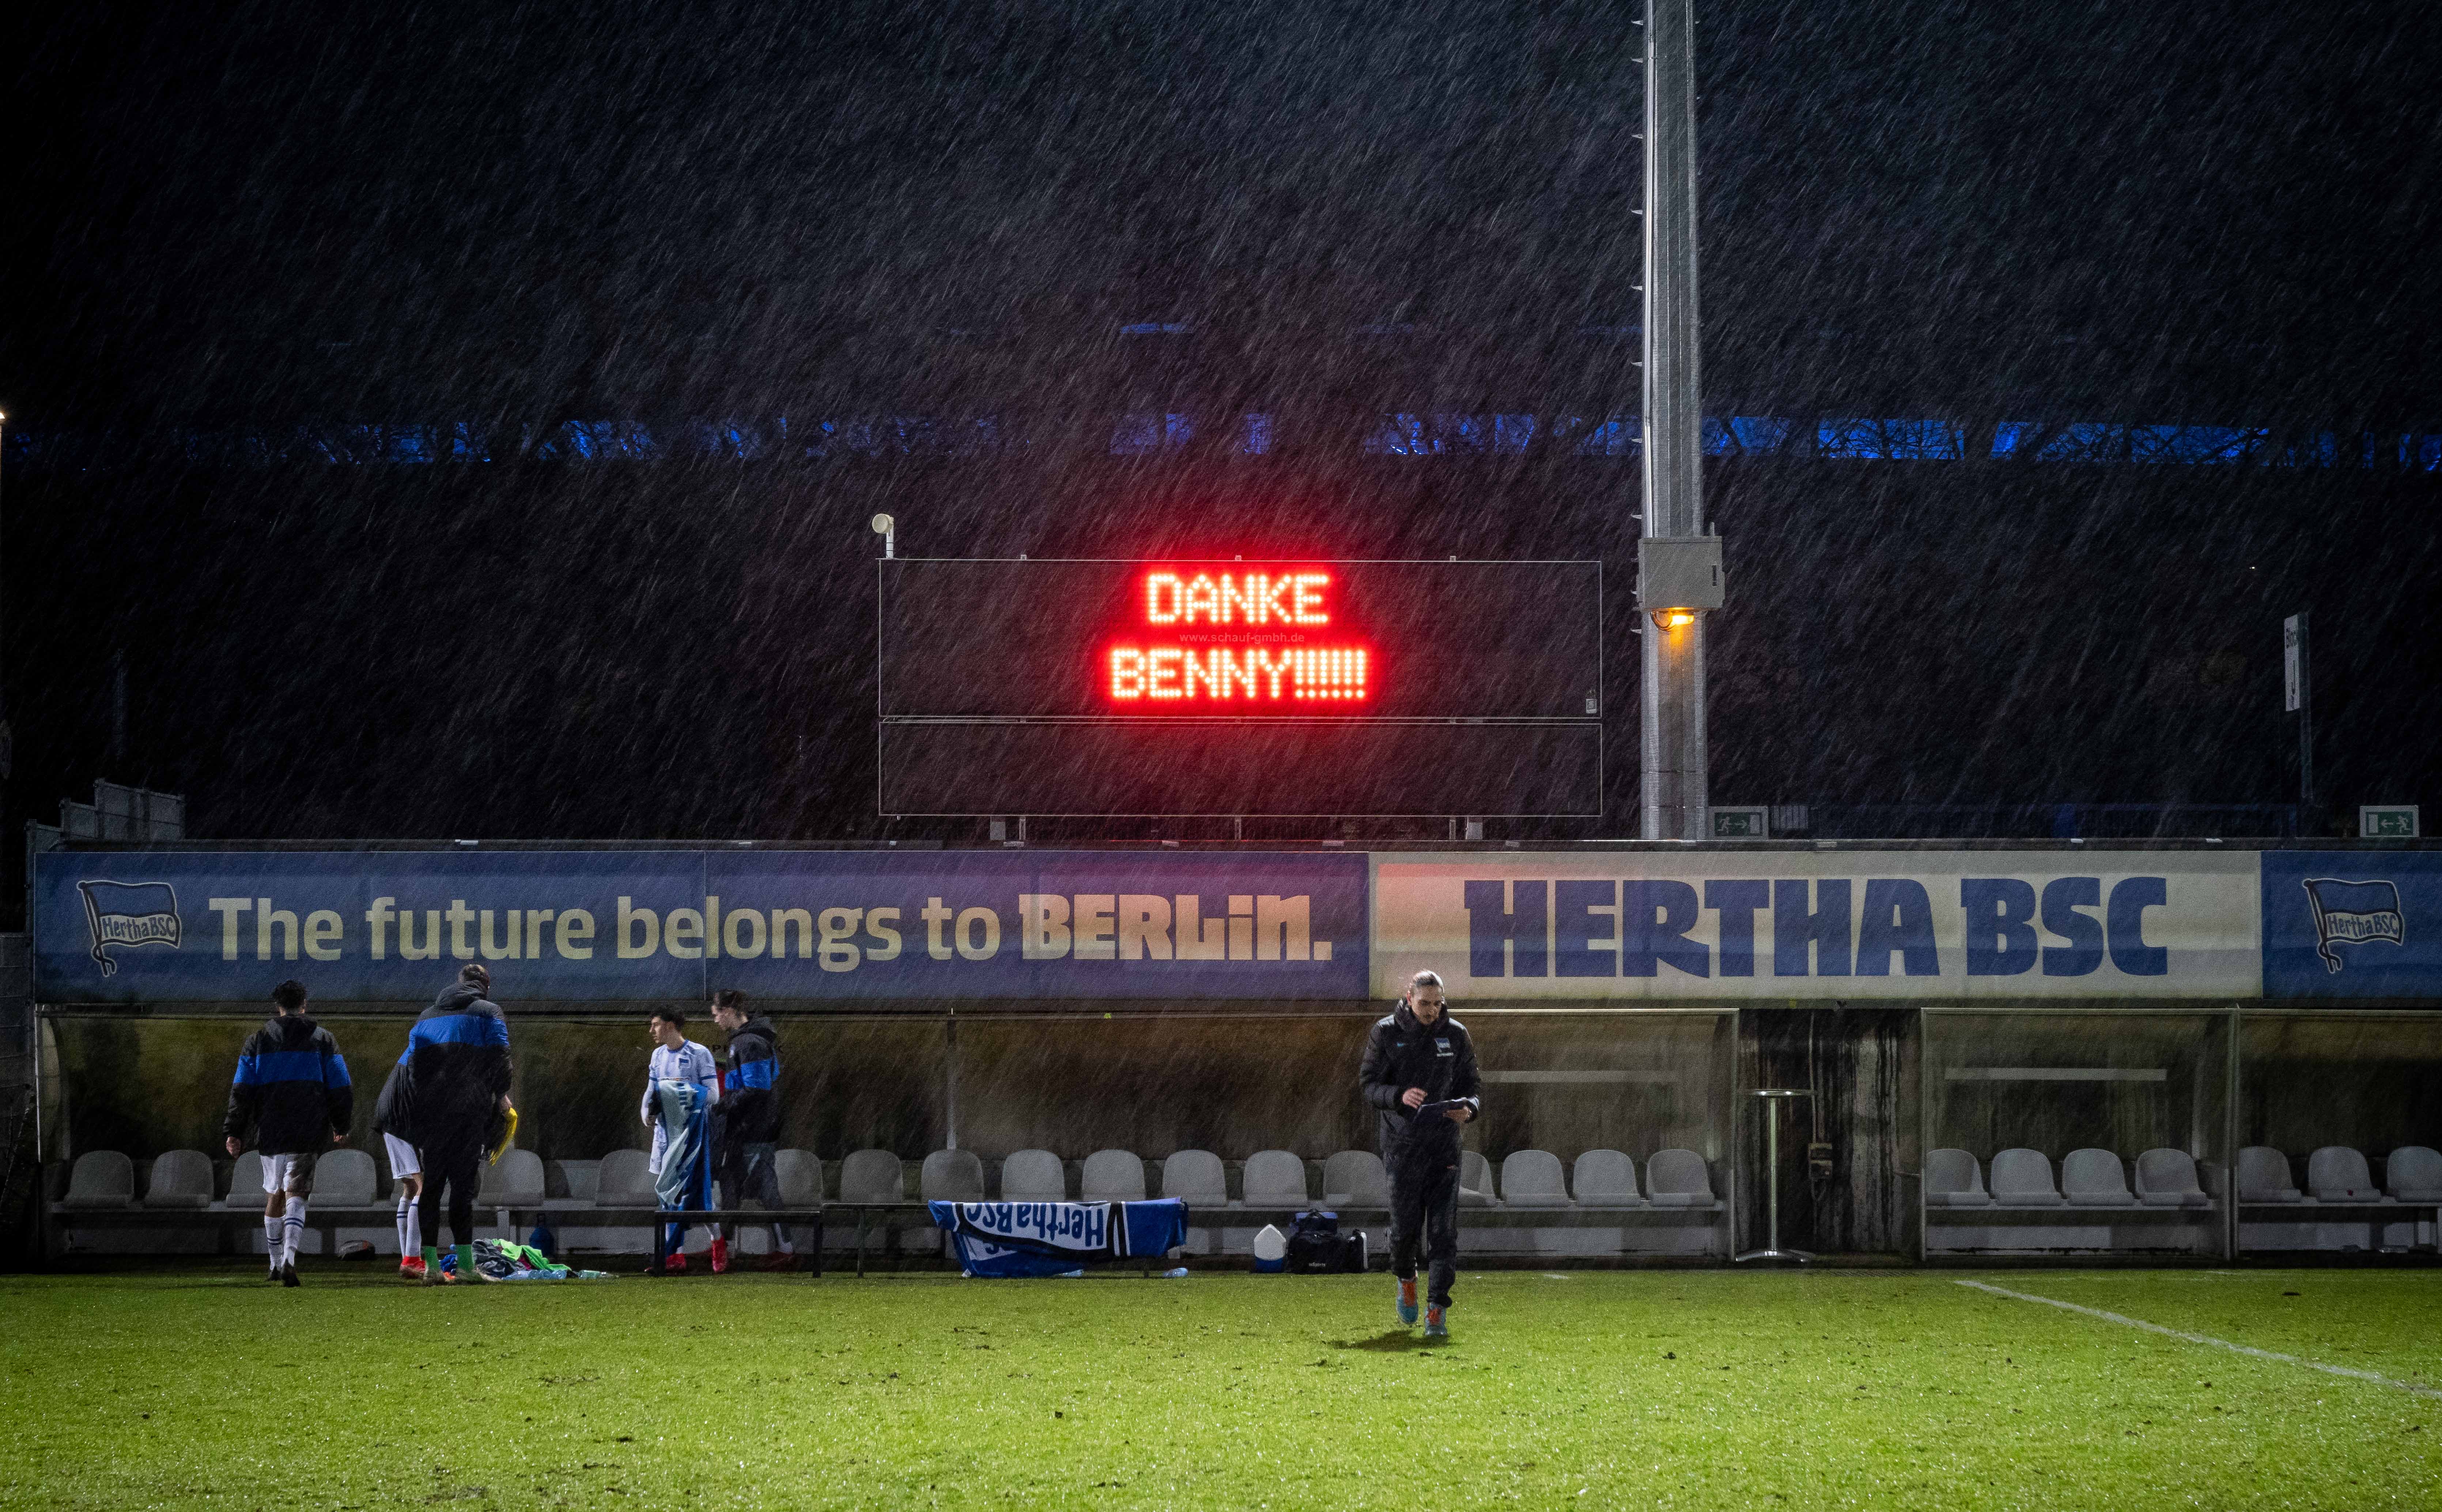 Auf der Anzeigetafel im Stadion auf dem Wurfplatz/Amateurstadion steht "Danke Benny".